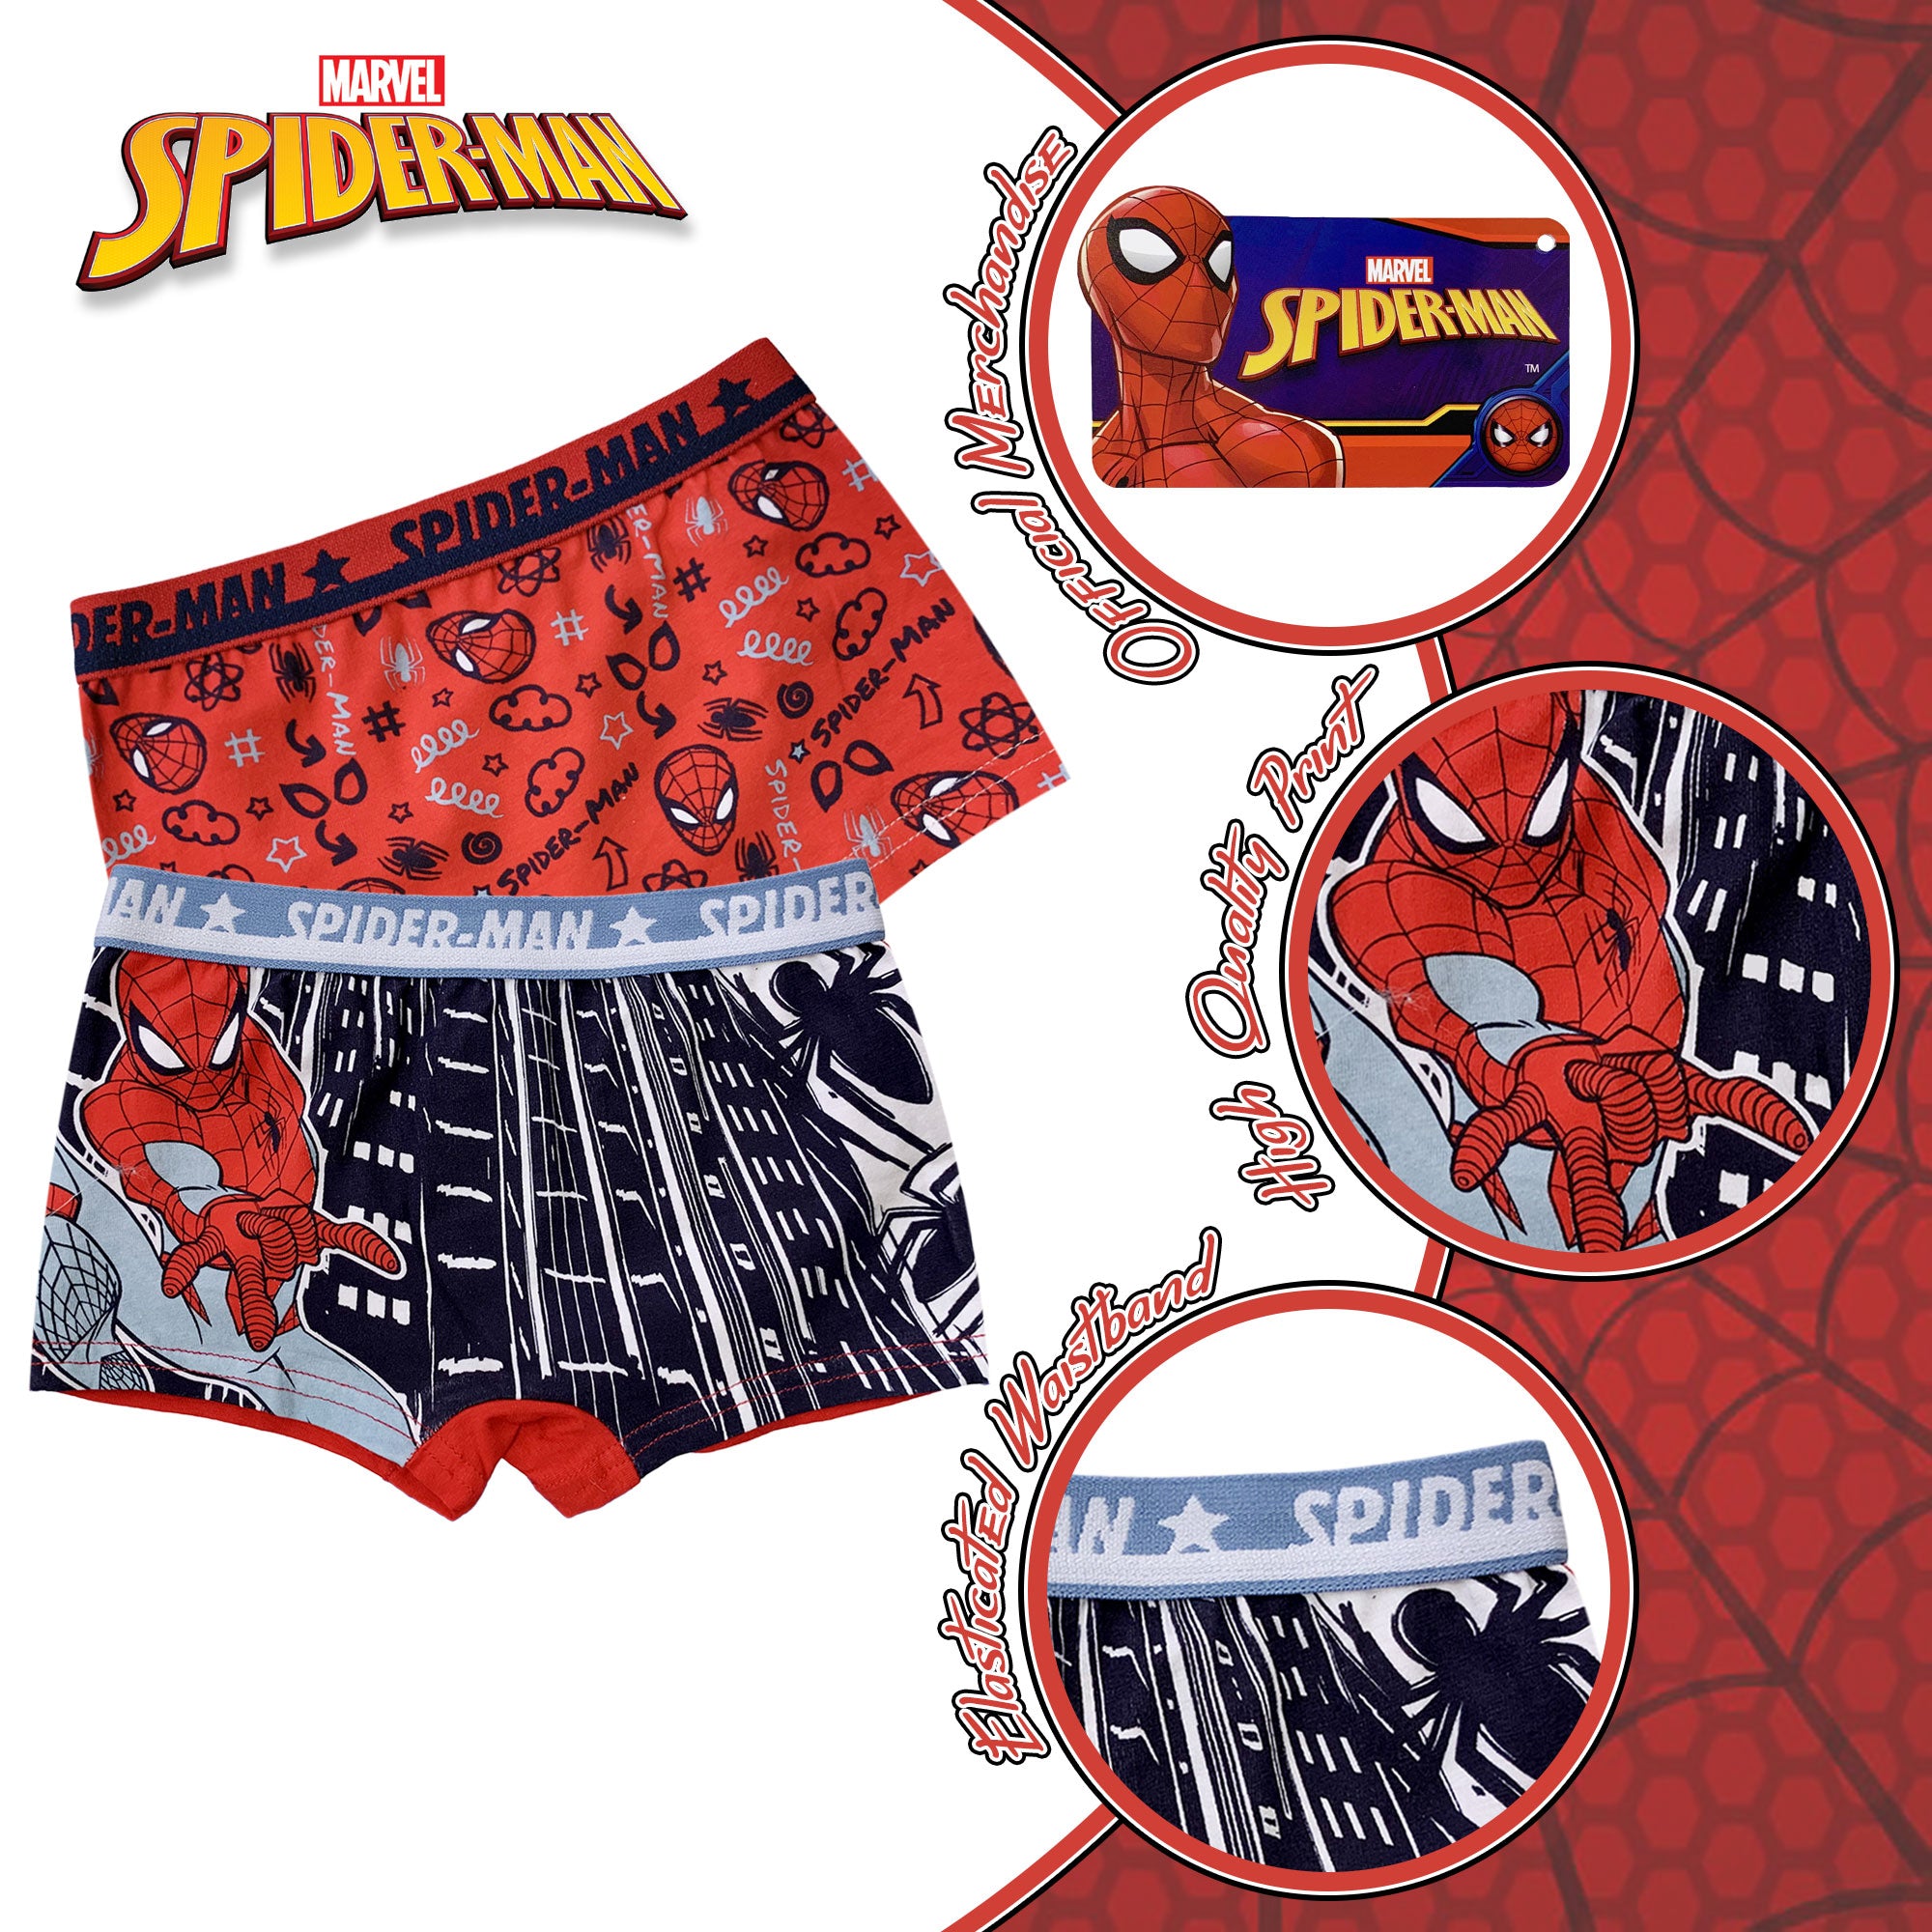 Set 2 Boxer Marvel Spiderman bambino shorties mutandine intimo in cotone 6191